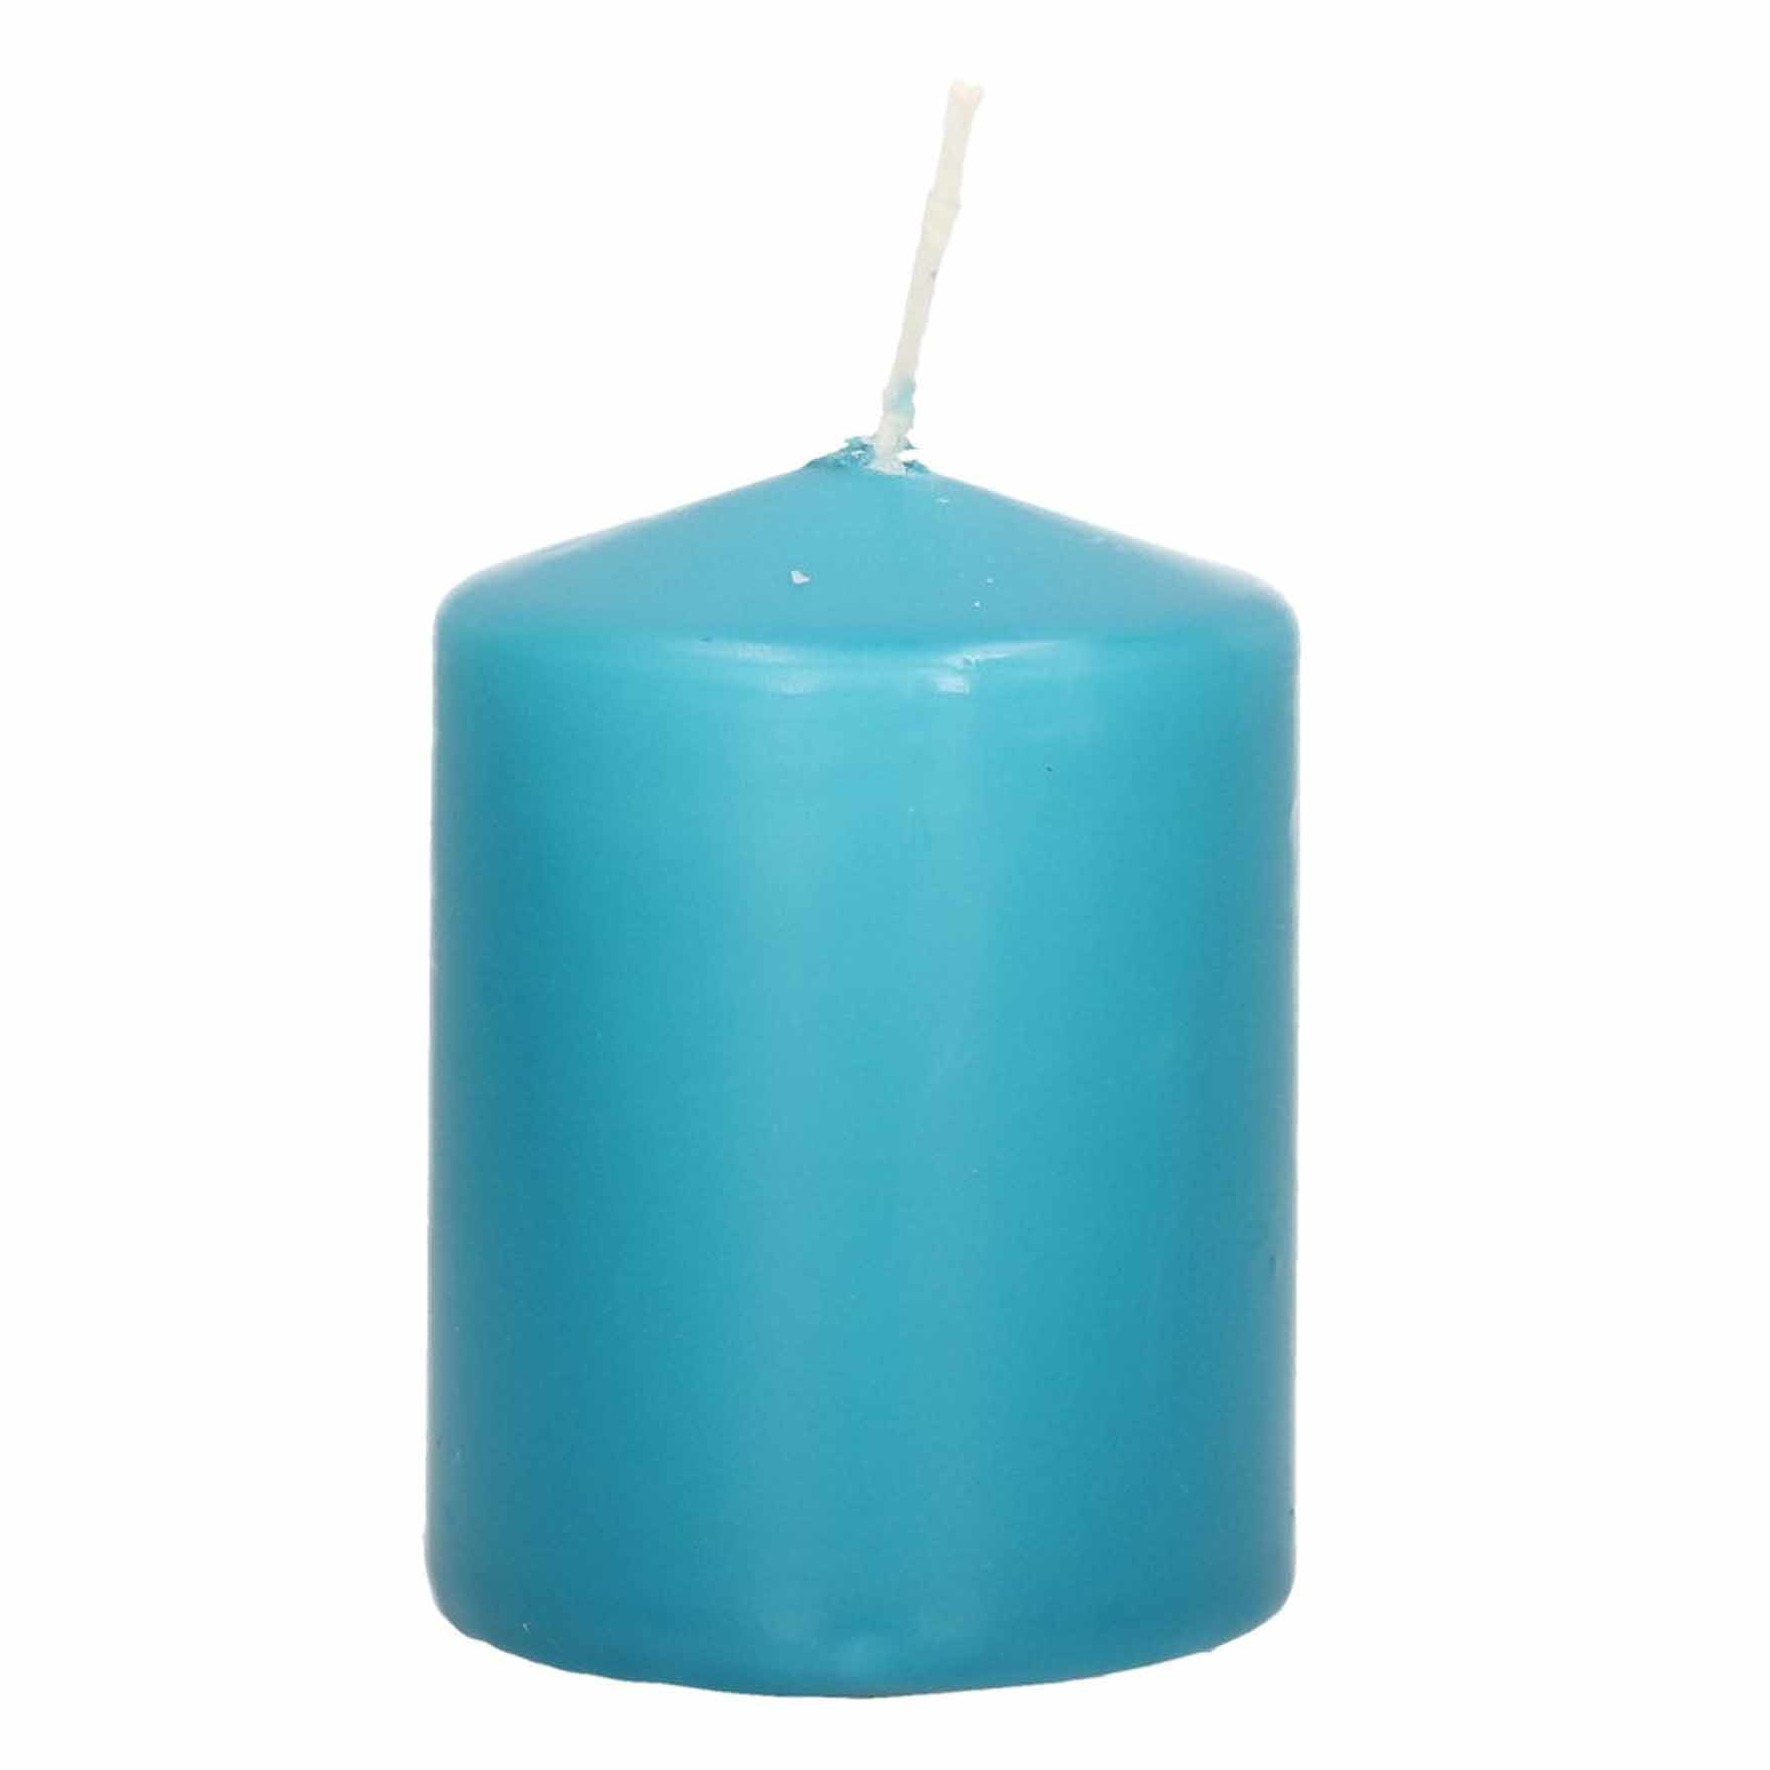 1x Turquoise blauwe woondecoratie kaarsen 6 x 8 cm 21 branduren